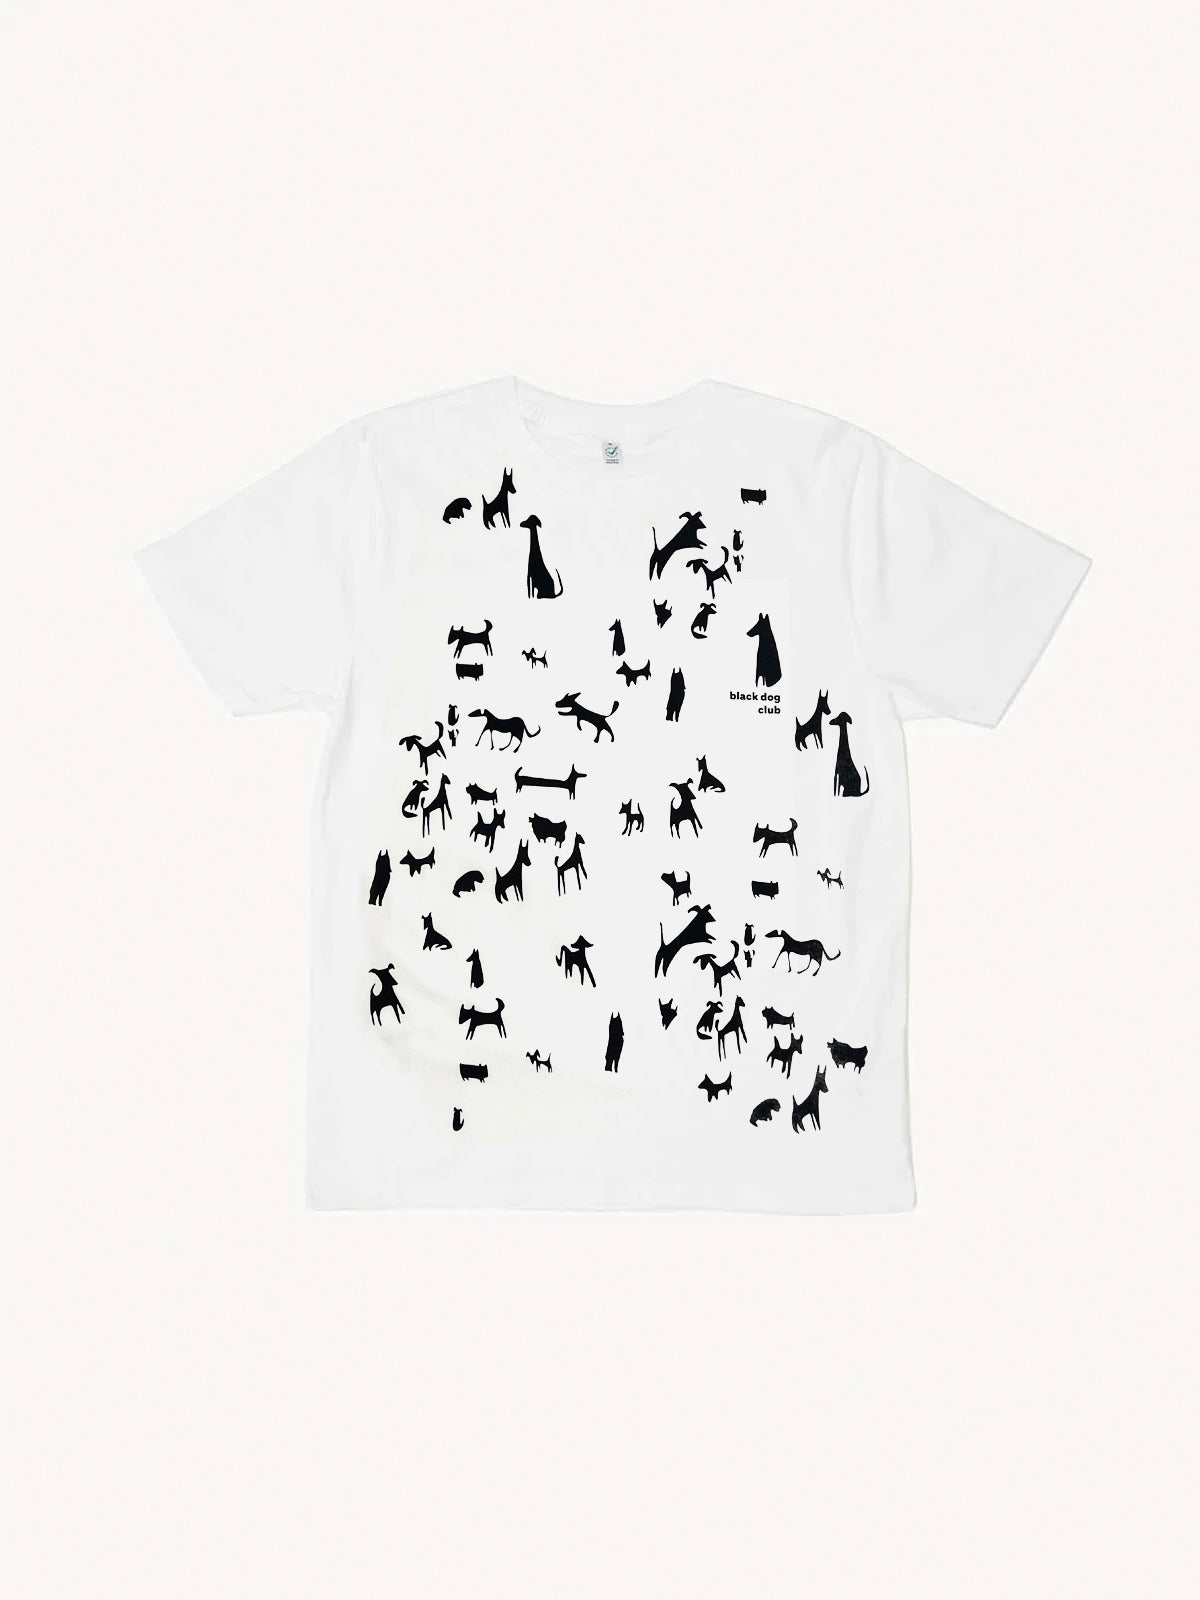 Black dog club printed t-shirt